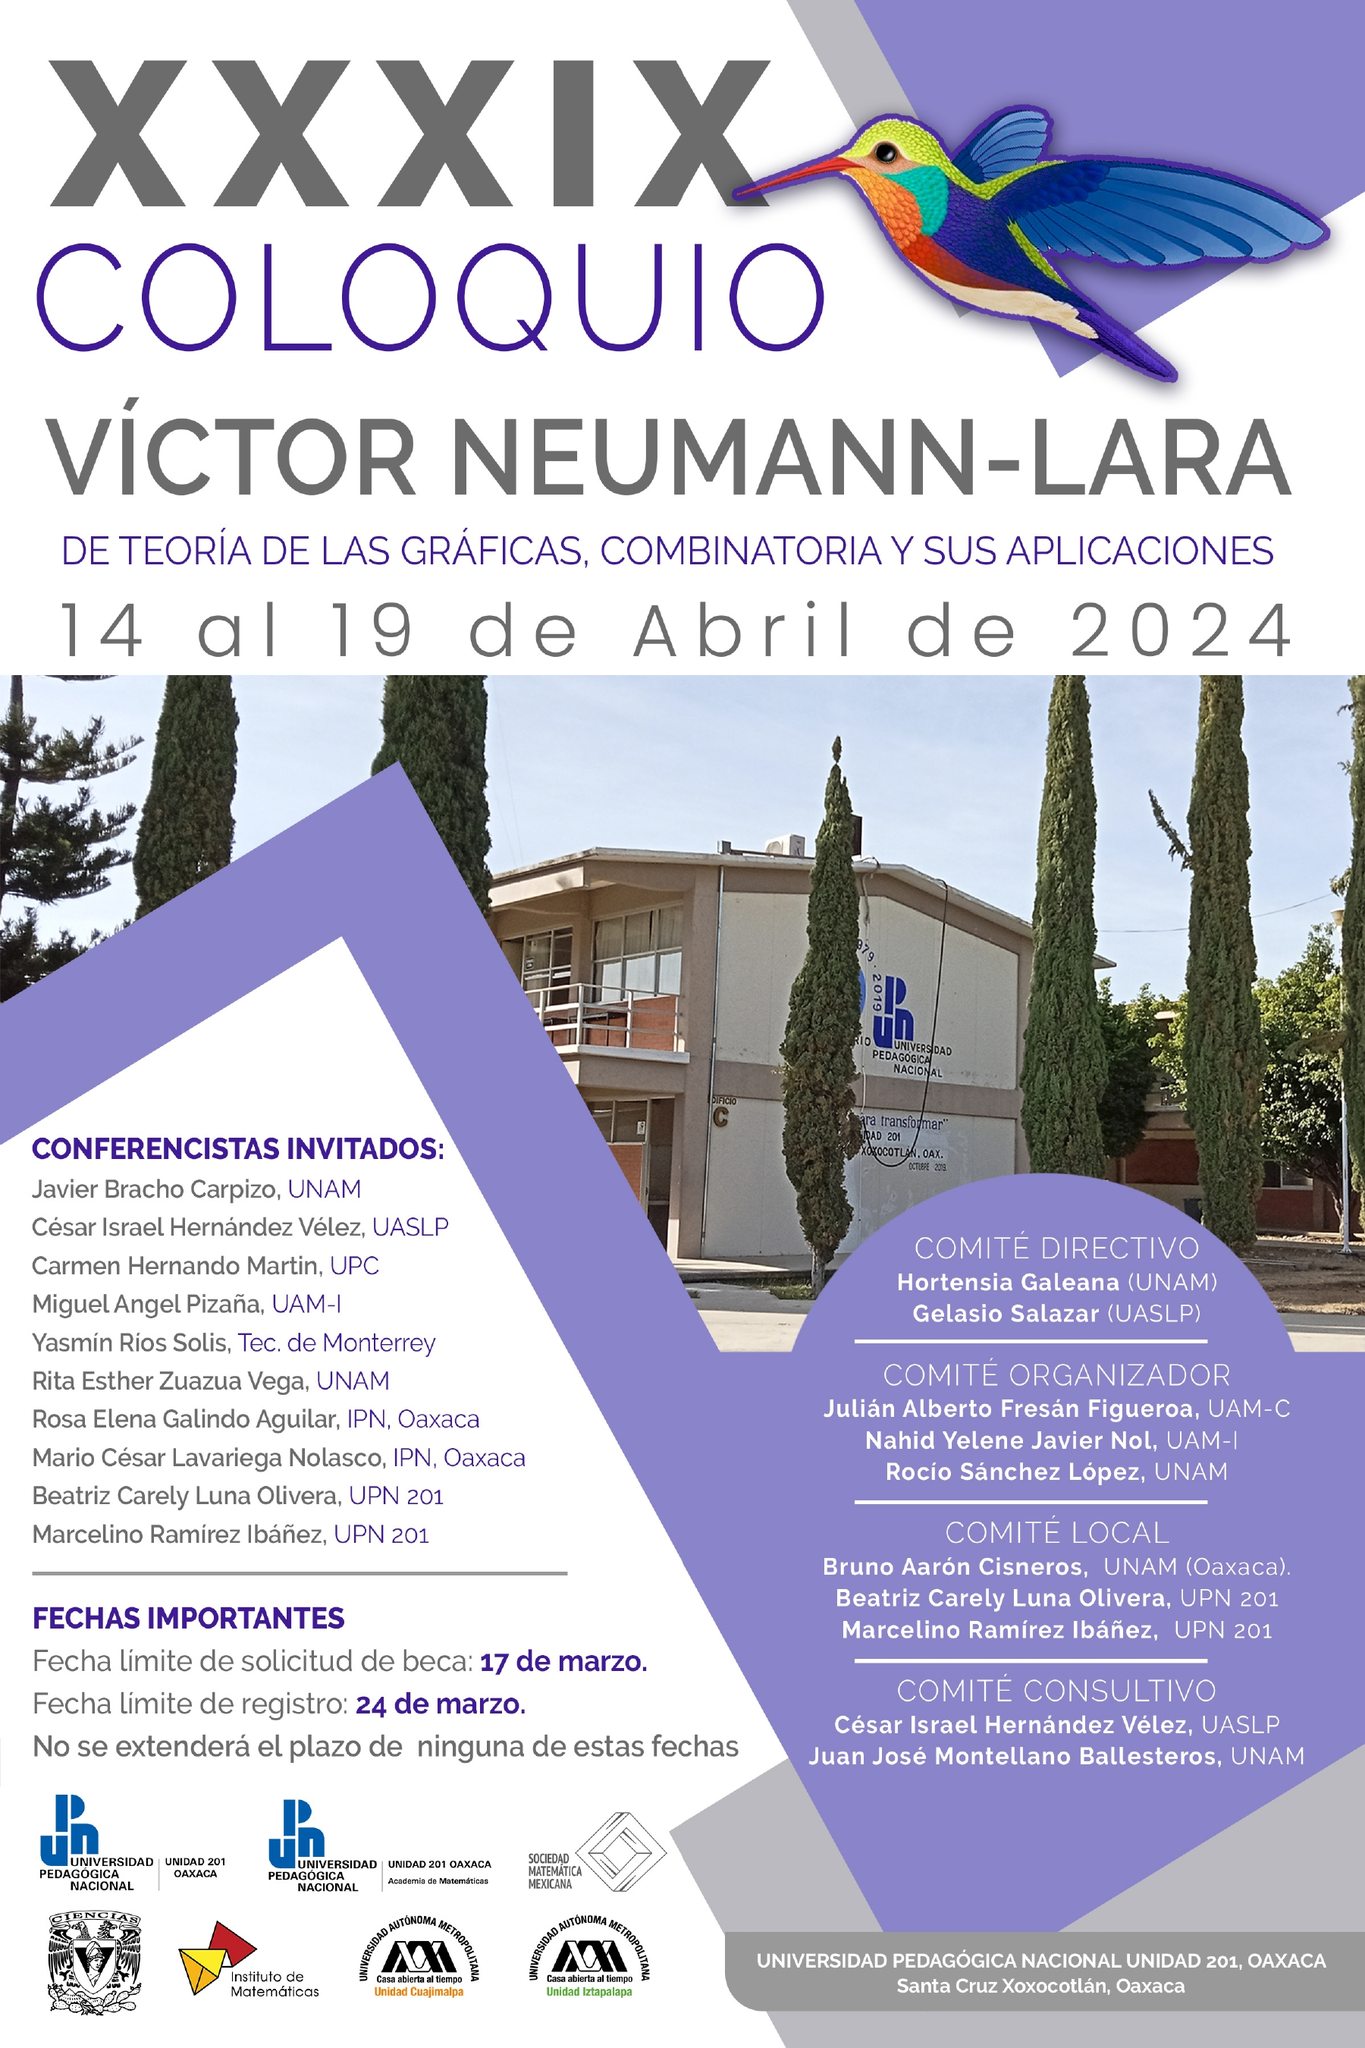 XXXIX Coloquio Víctor Neumann-Lara de Teoría de las Gráficas, Combinatoria y sus Aplicaciones 